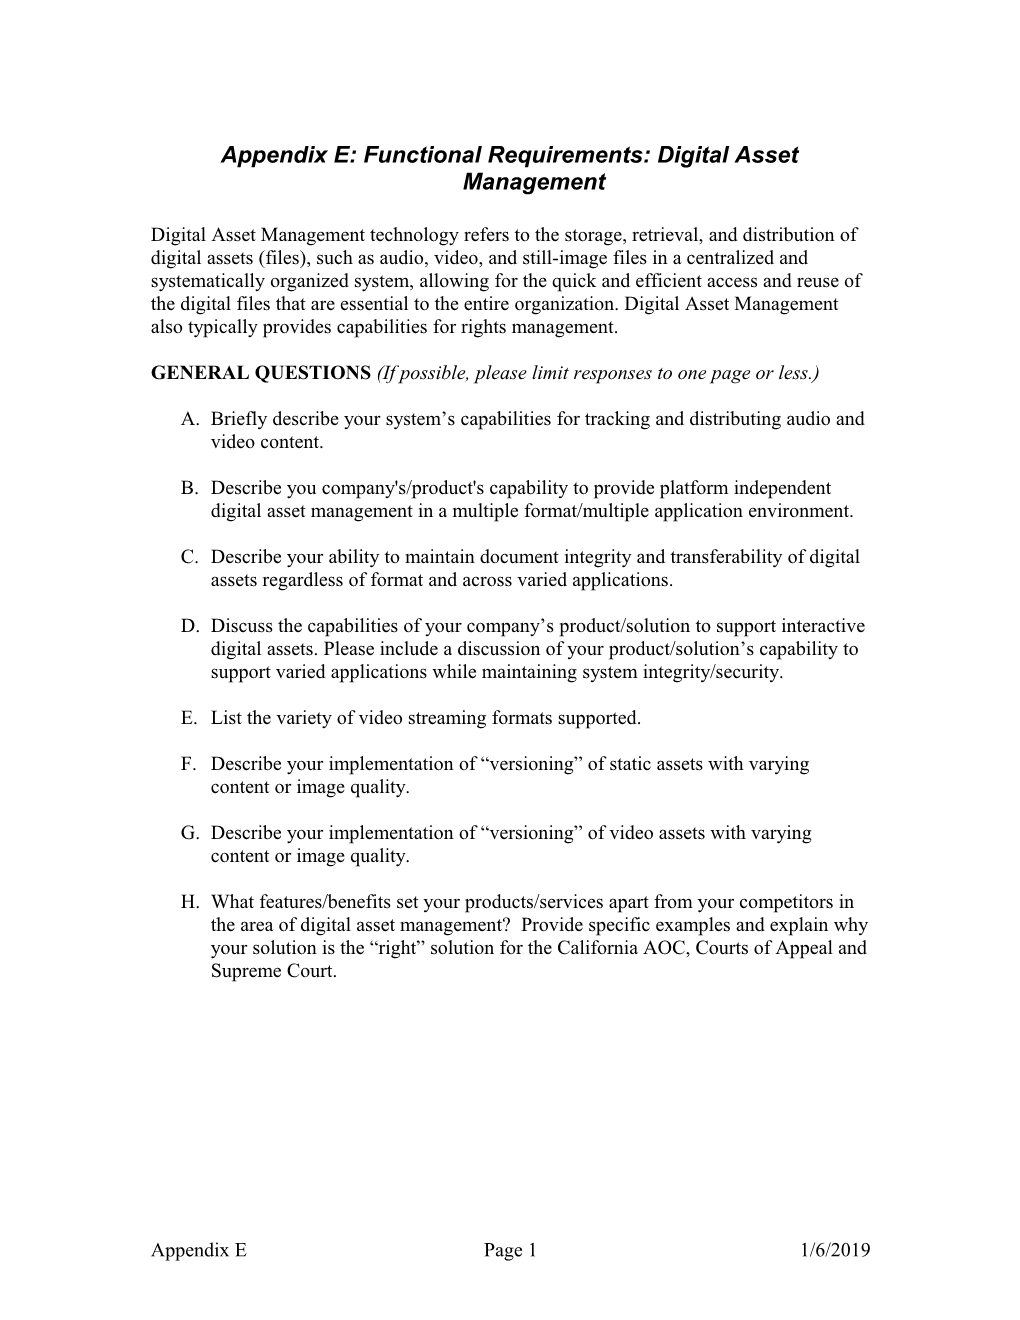 Appendix E: Functional Requirements: Digital Asset Management